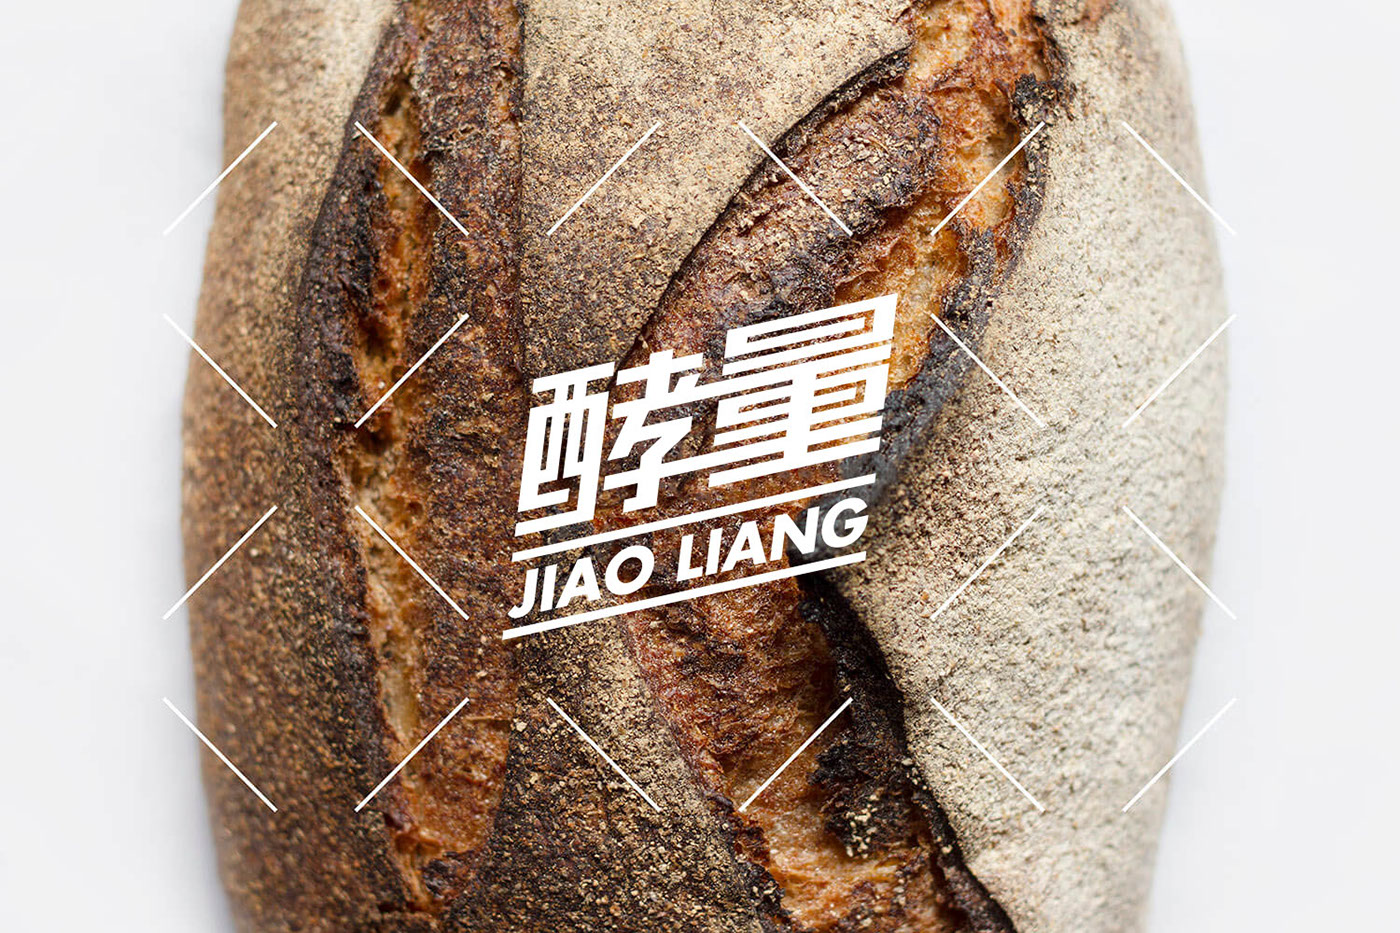 bread logo DESIGN 面包品牌标志设计 bread logo baker logo baking logo